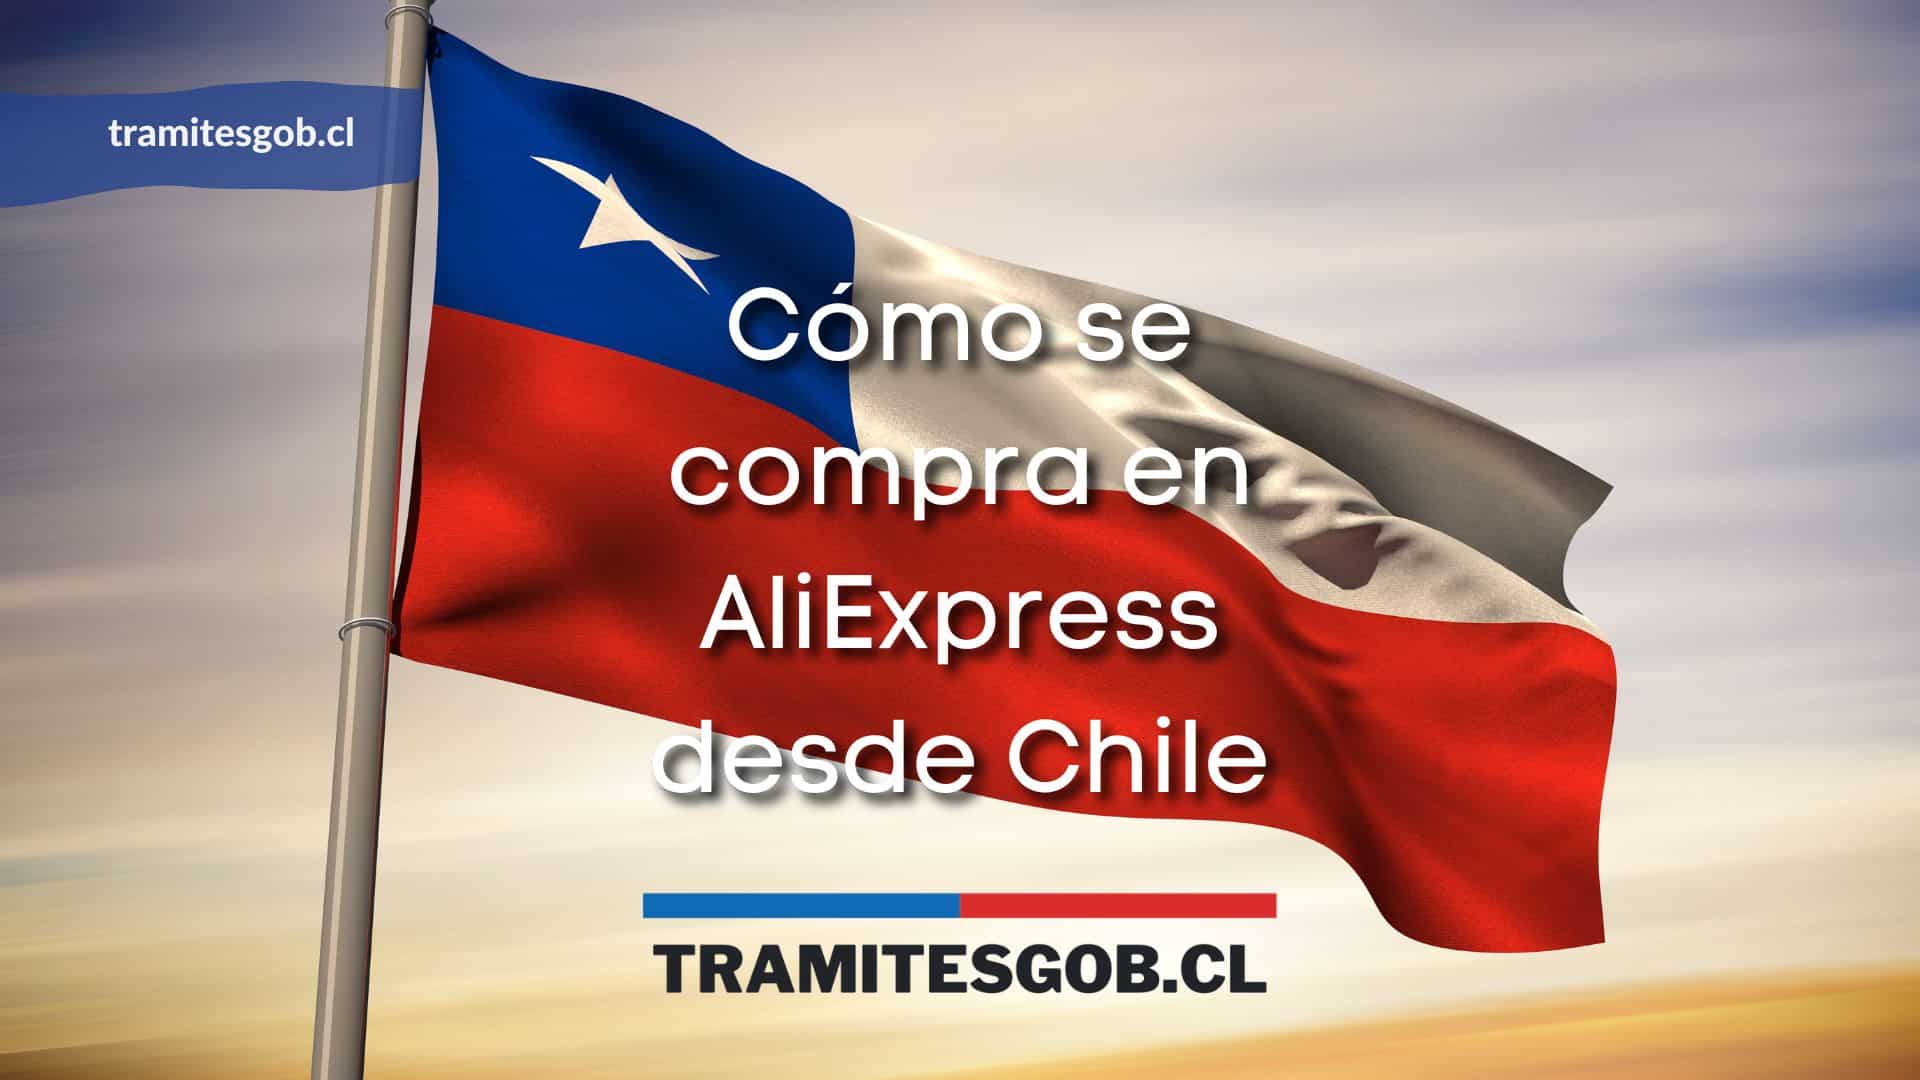 Cómo se compra en AliExpress desde Chile